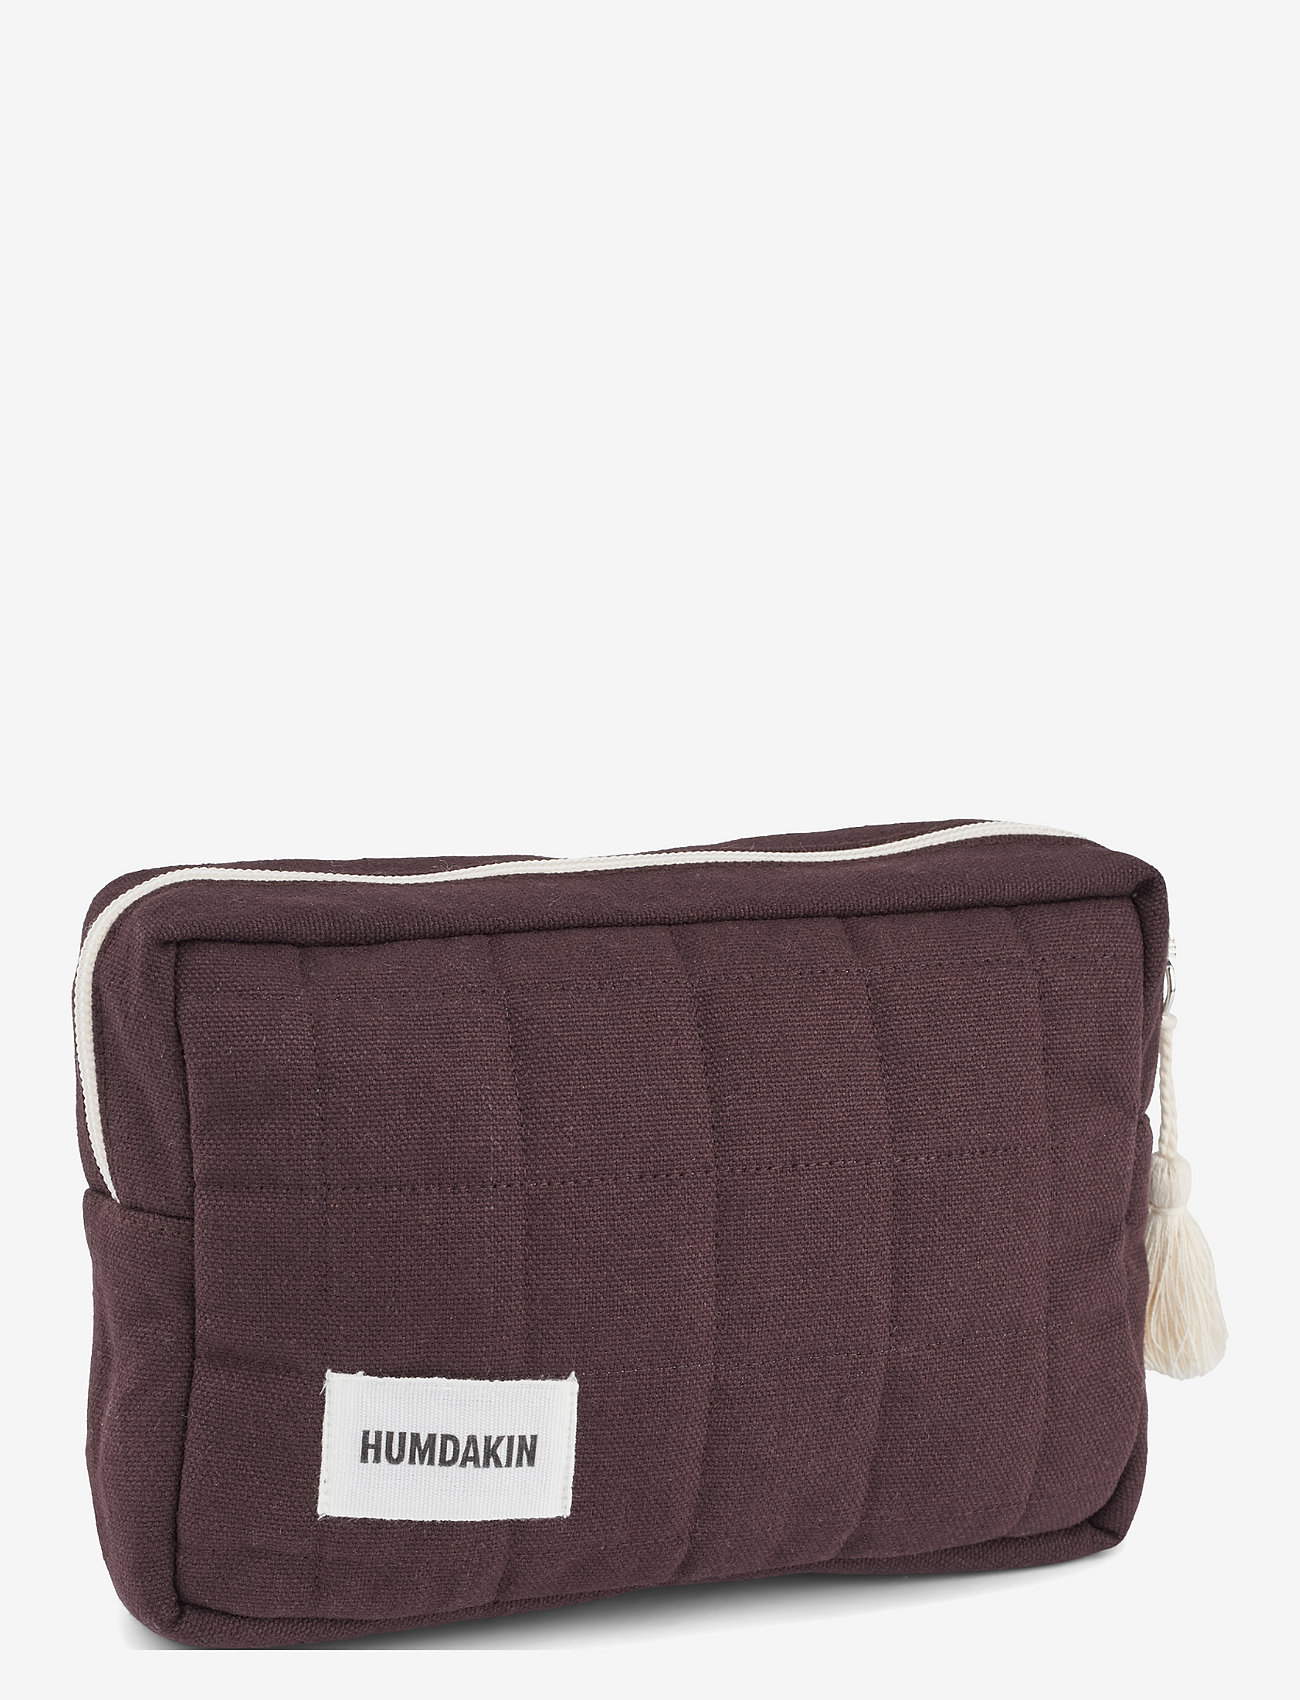 Humdakin - Cosmetic Bag - odzież imprezowa w cenach outletowych - coco - 0